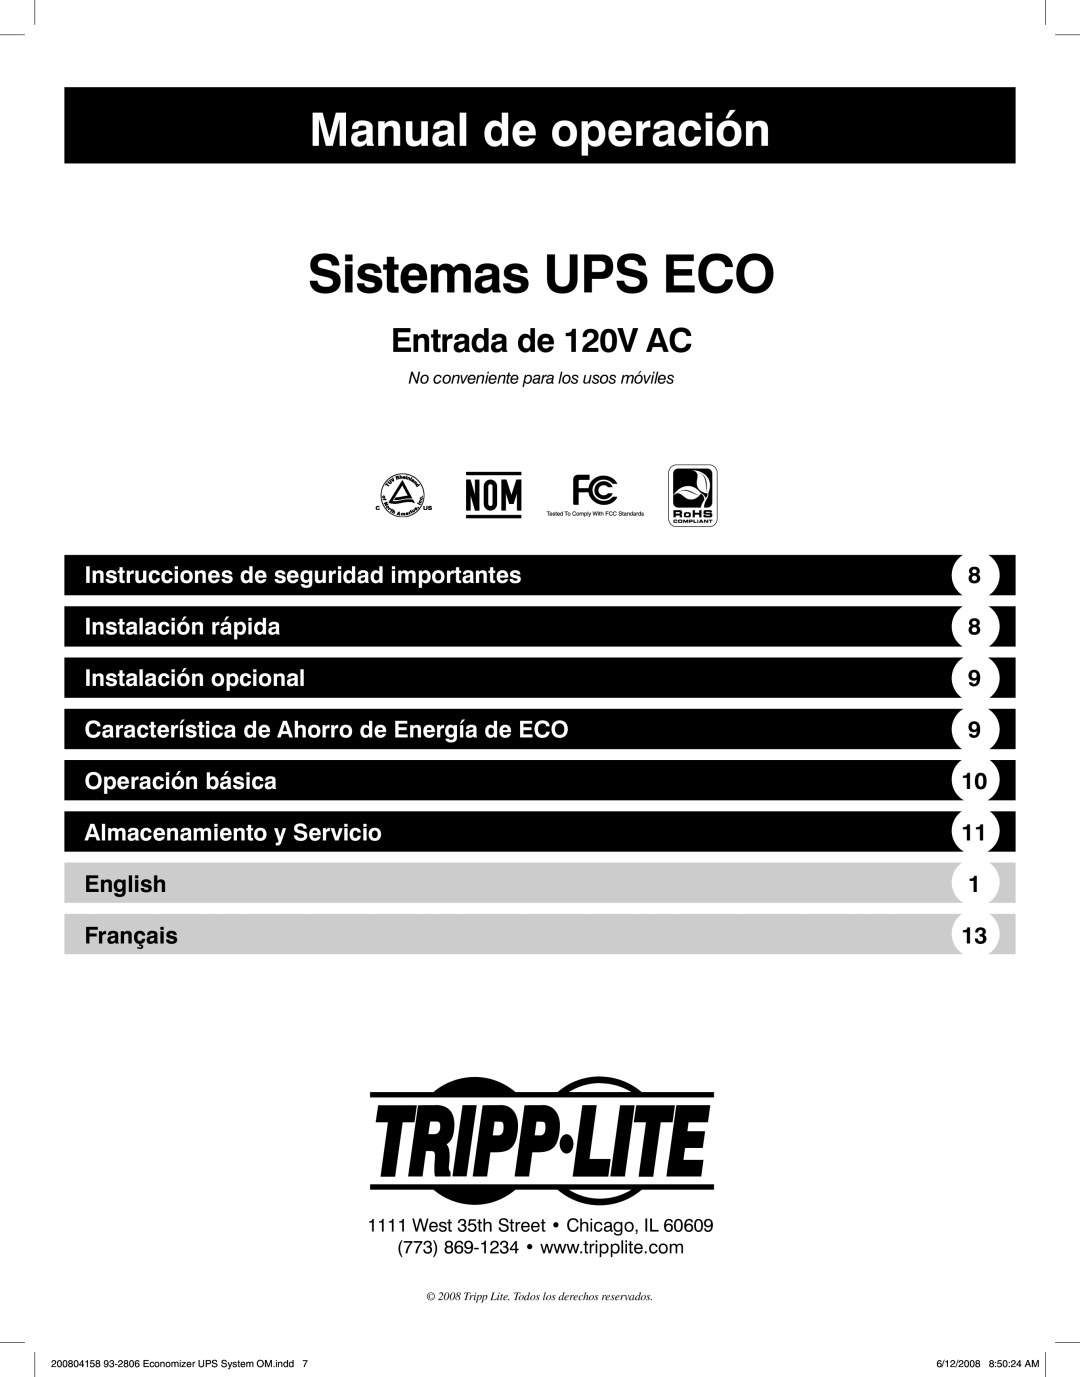 Tripp Lite ECO UPS System Sistemas UPS ECO, Manual de operación, Entrada de 120V AC, Instalación rápida, Operación básica 